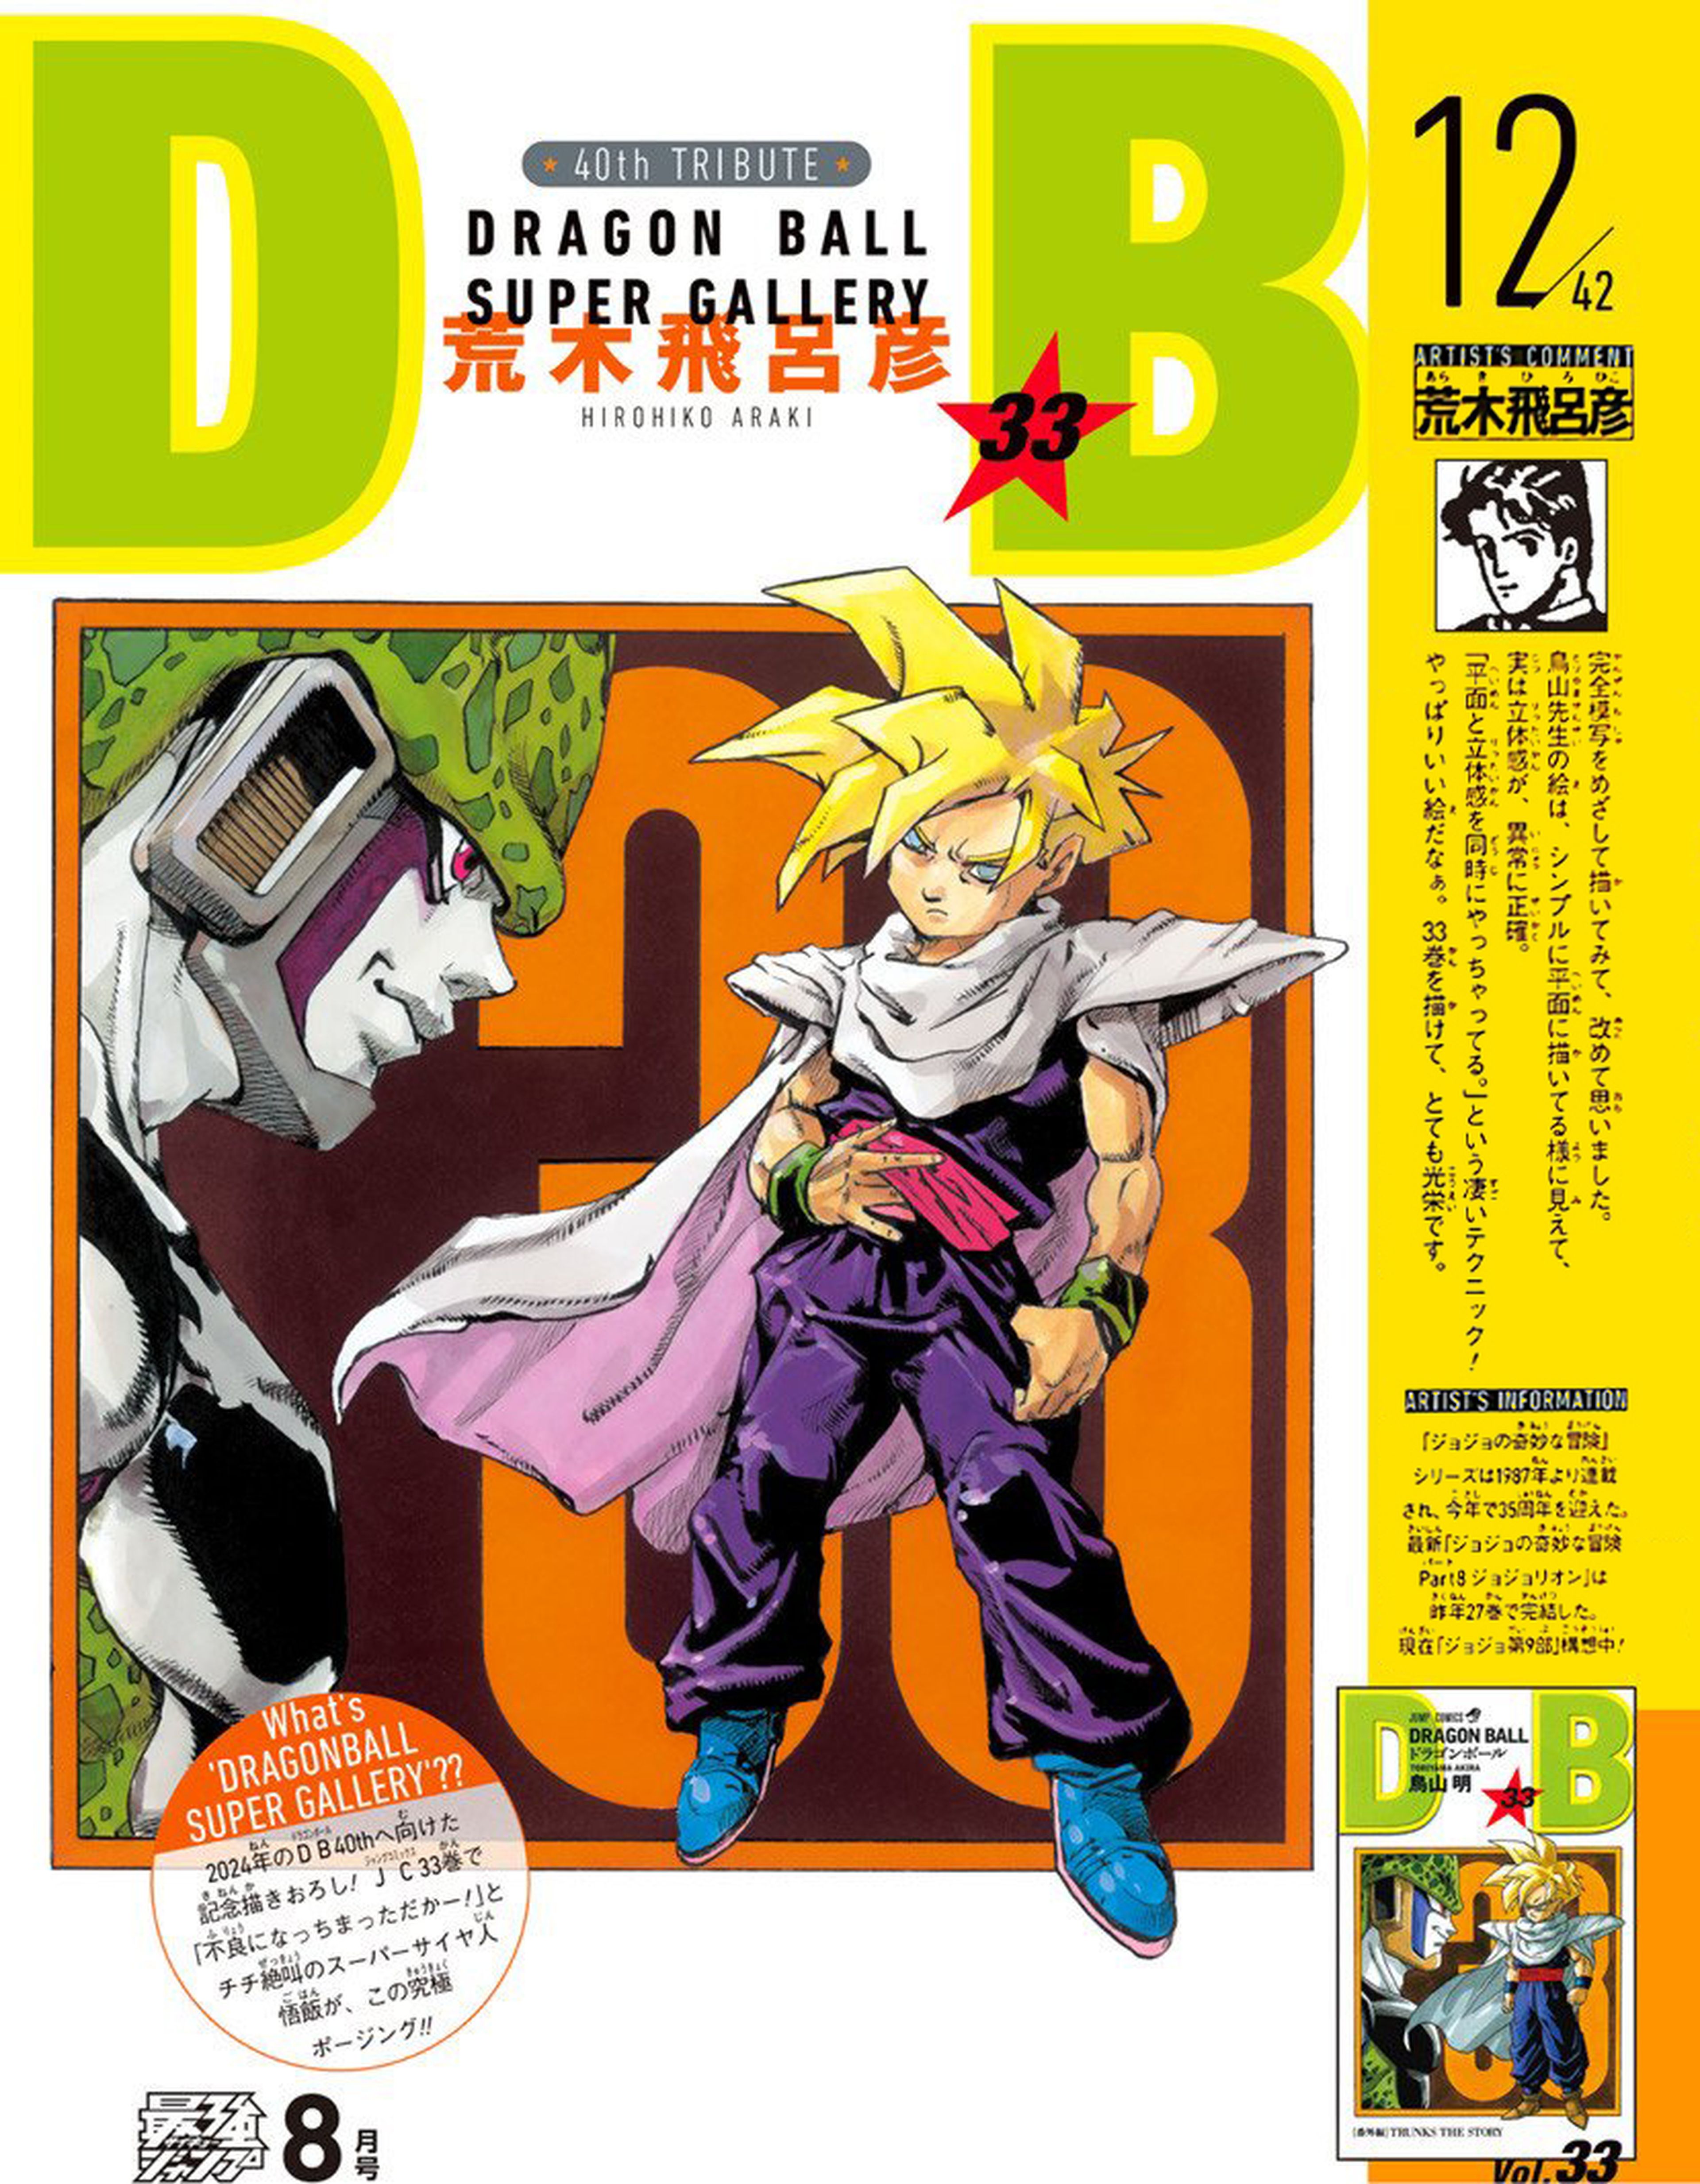 Dragon Ball - El creador de Jojo's Bizarre Adventure, Hirohiko Araki, redibuja una portada de la serie manga de Akira Toriyama